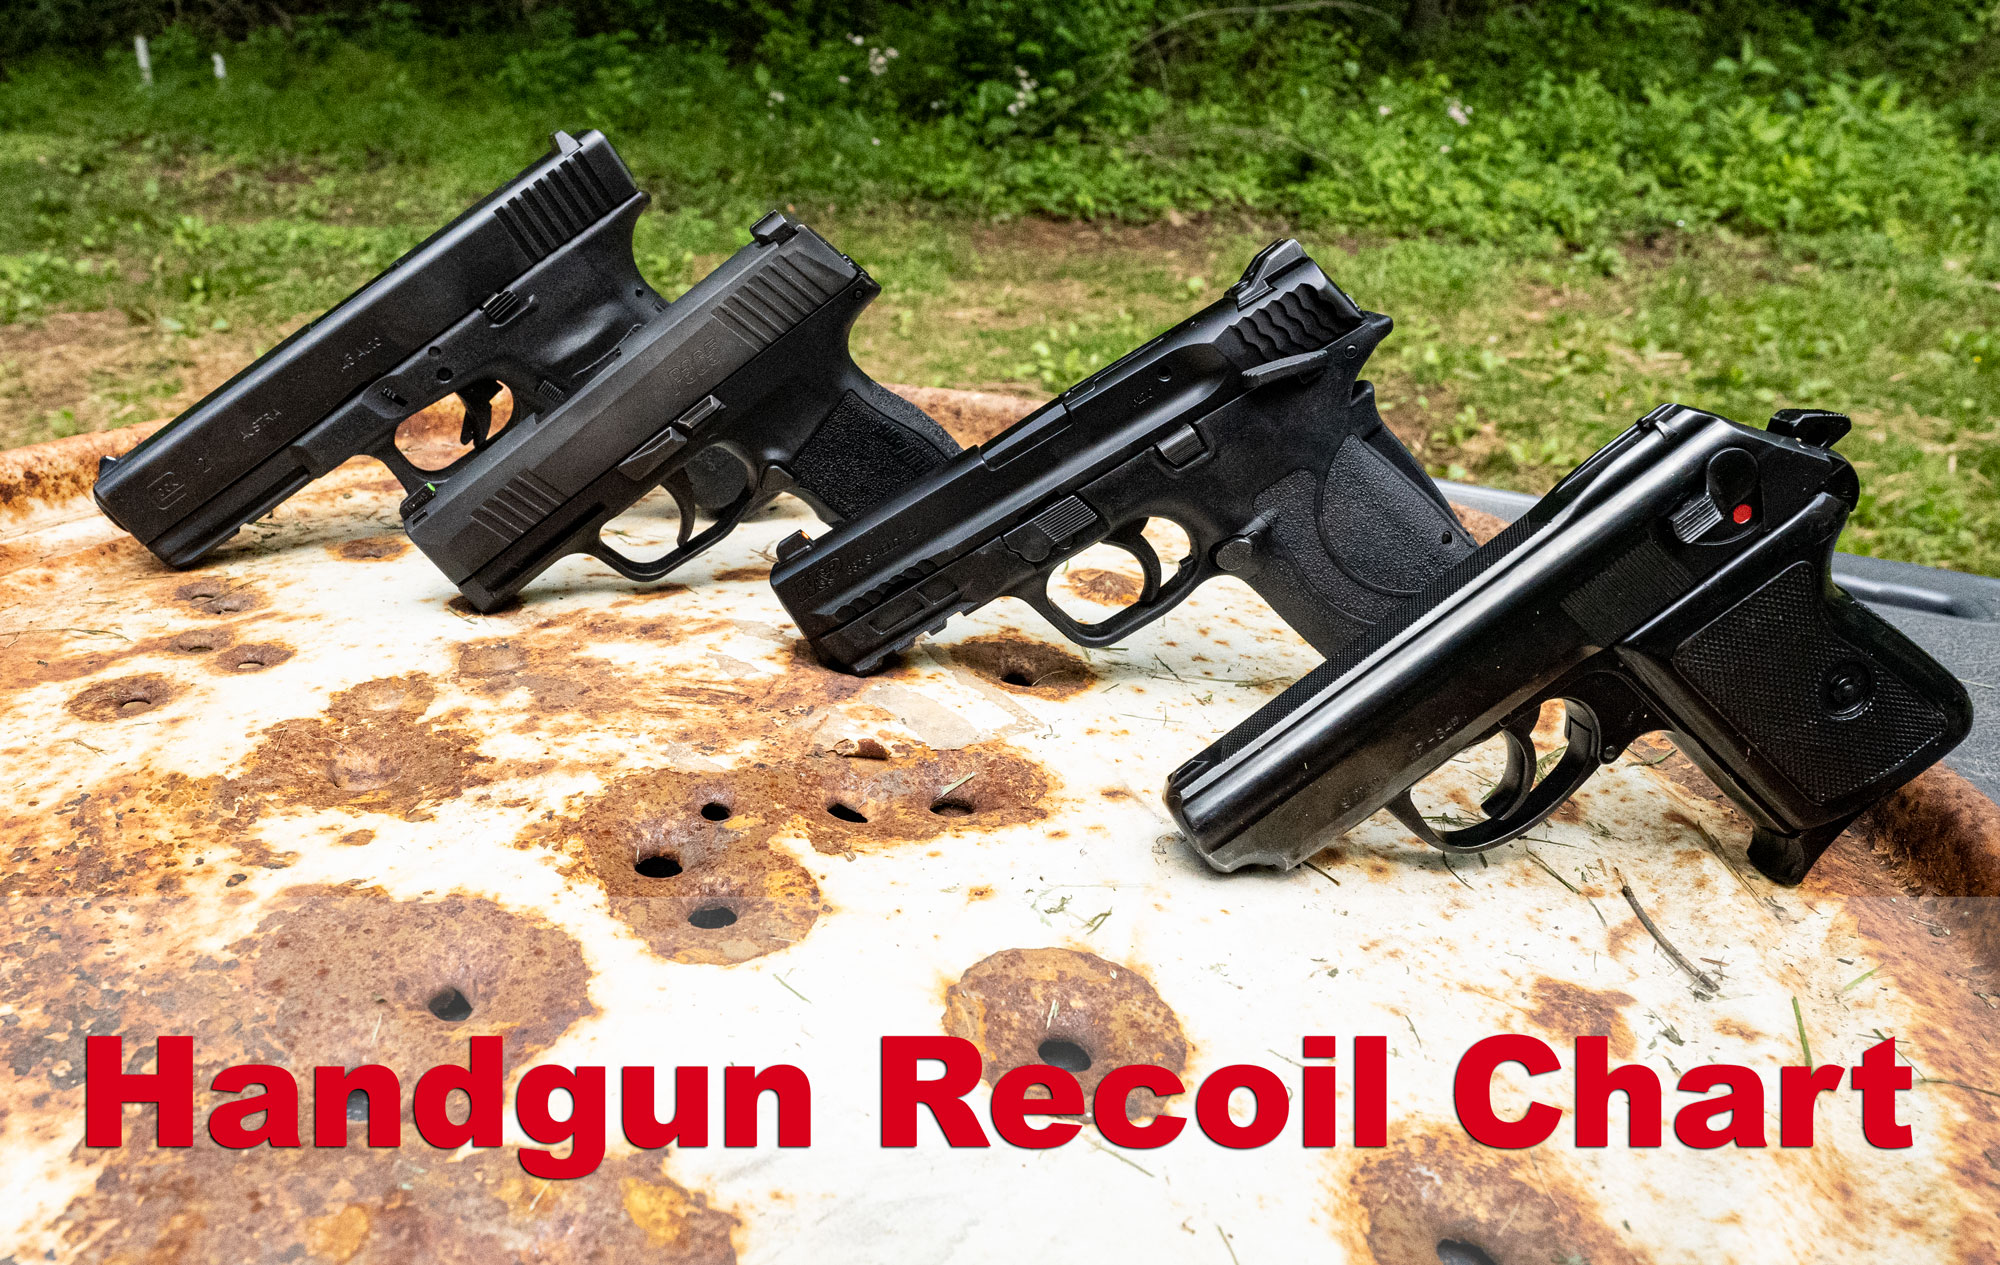 Handgun recoil chart